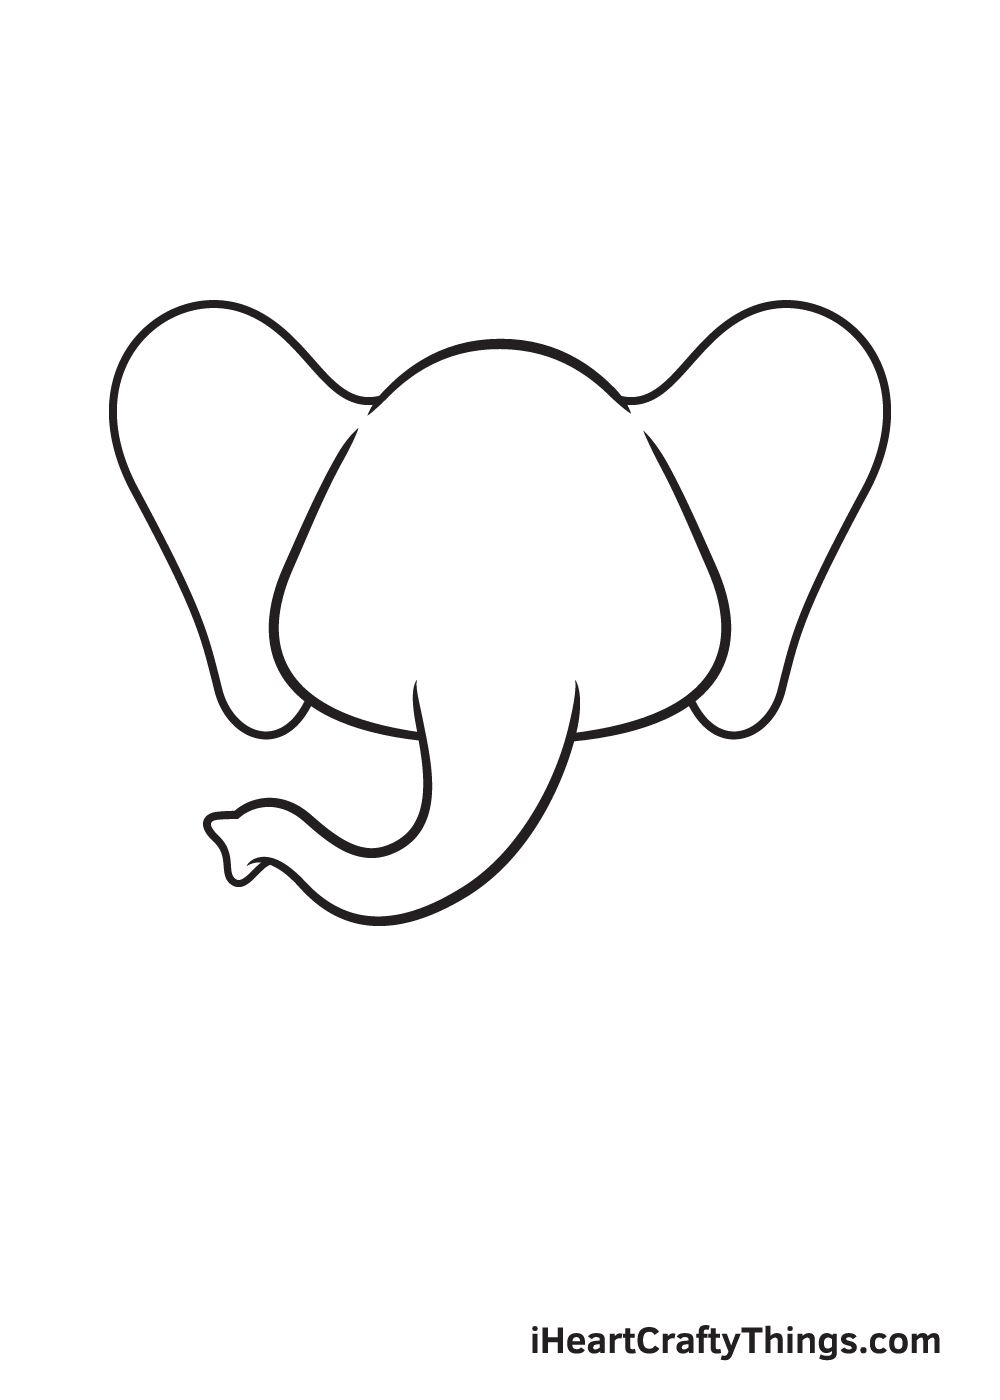 Elephant DRAWING – STEP 3 - Hướng dẫn chi tiết cách vẽ con voi đơn giản với 6 bước cơ bản